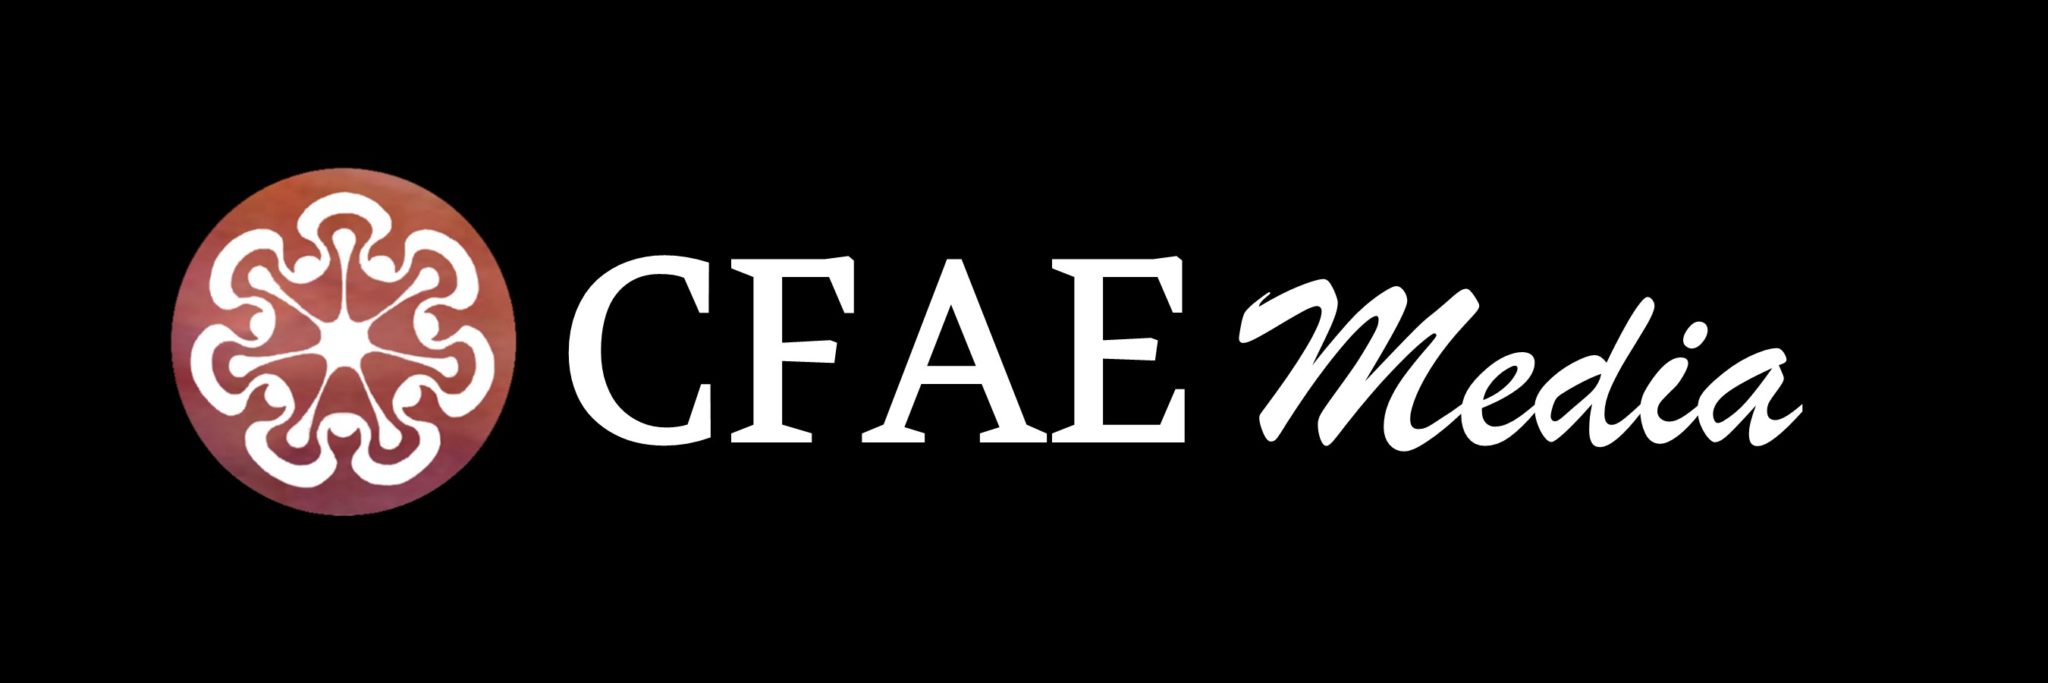 CFAE Media